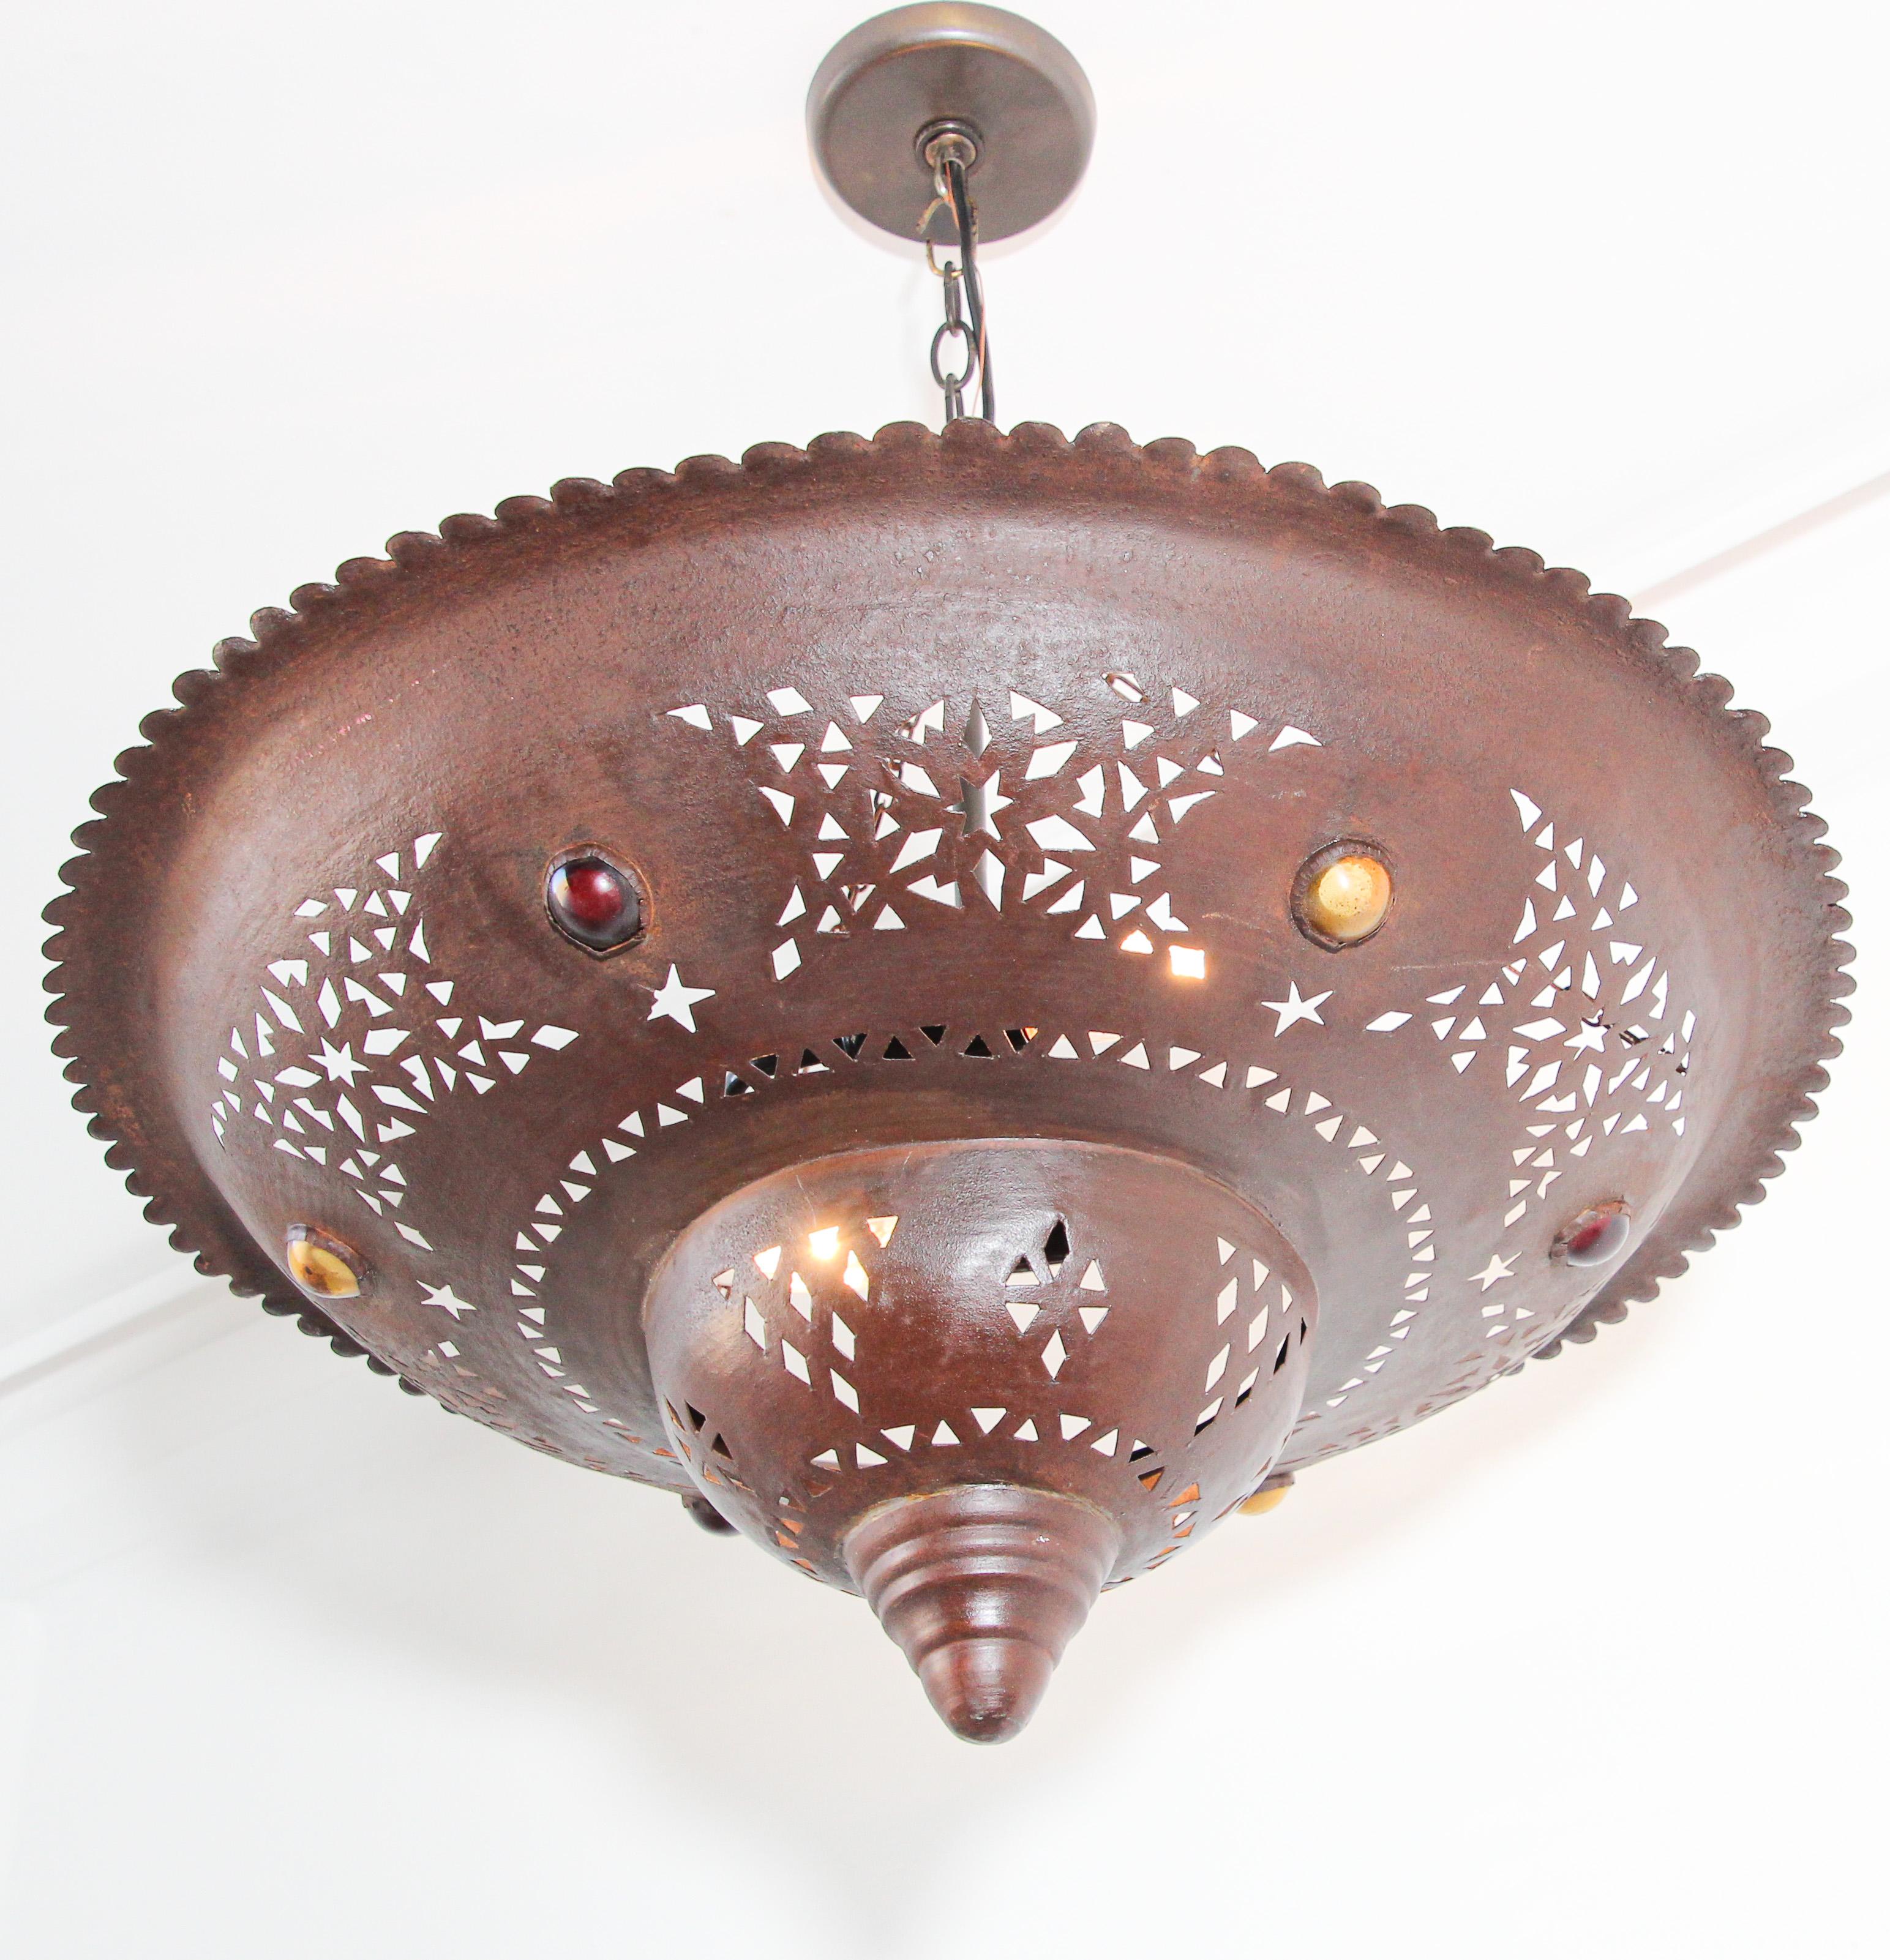 Grand lustre marocain en métal, fabriqué à la main, avec un design mauresque.
Métal brun de couleur foncée martelé et incrusté de verres ronds de couleur rouge et ambre.
Recâblé, prêt à être utilisé.
Des chaînes supplémentaires peuvent être